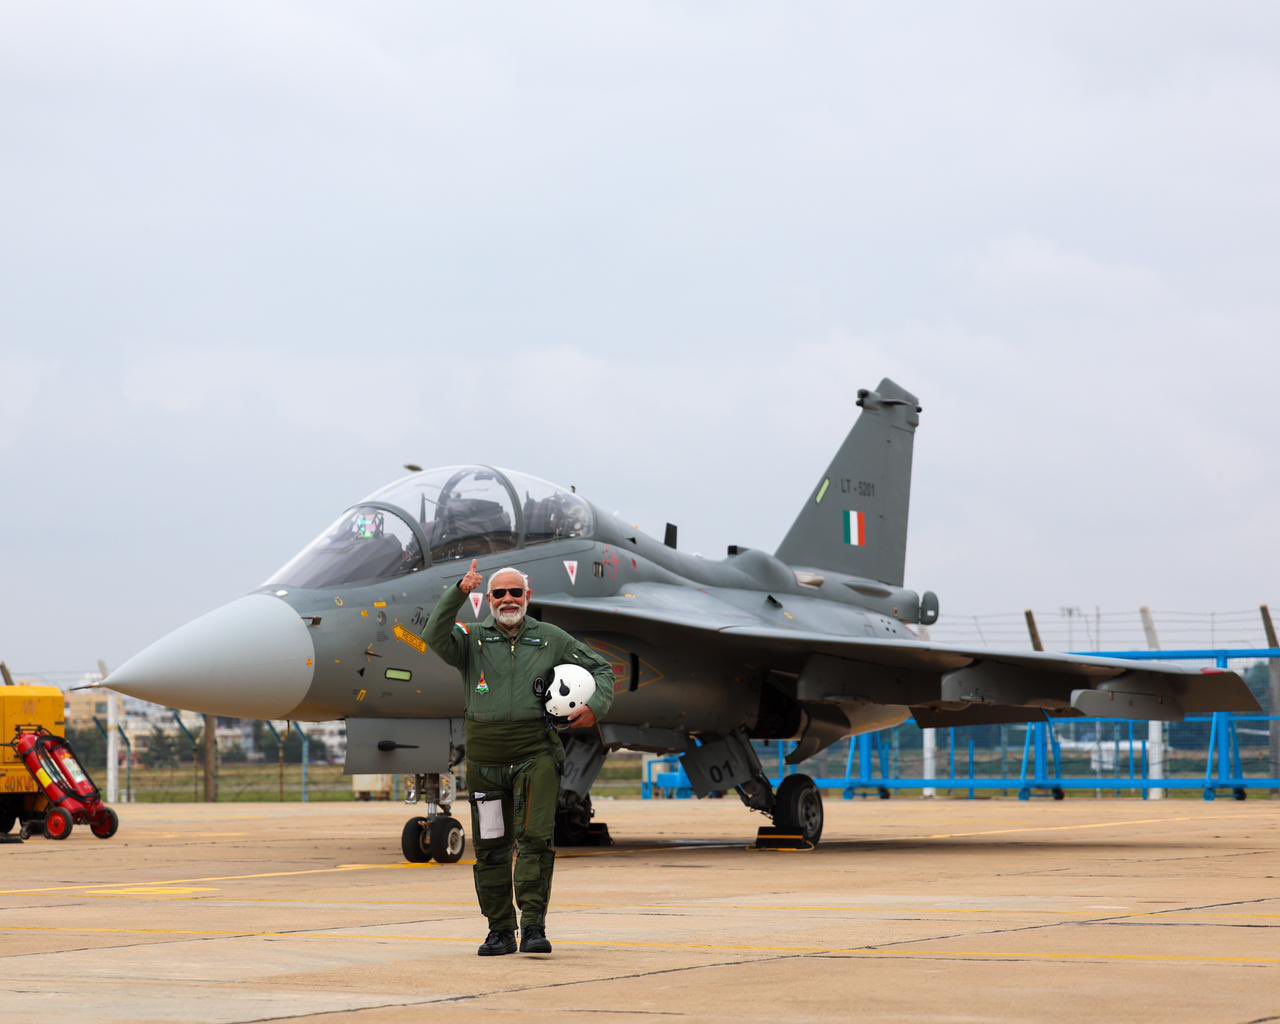 PM Narendra Modi Takes To The Skies In Tejas Fighter Jet